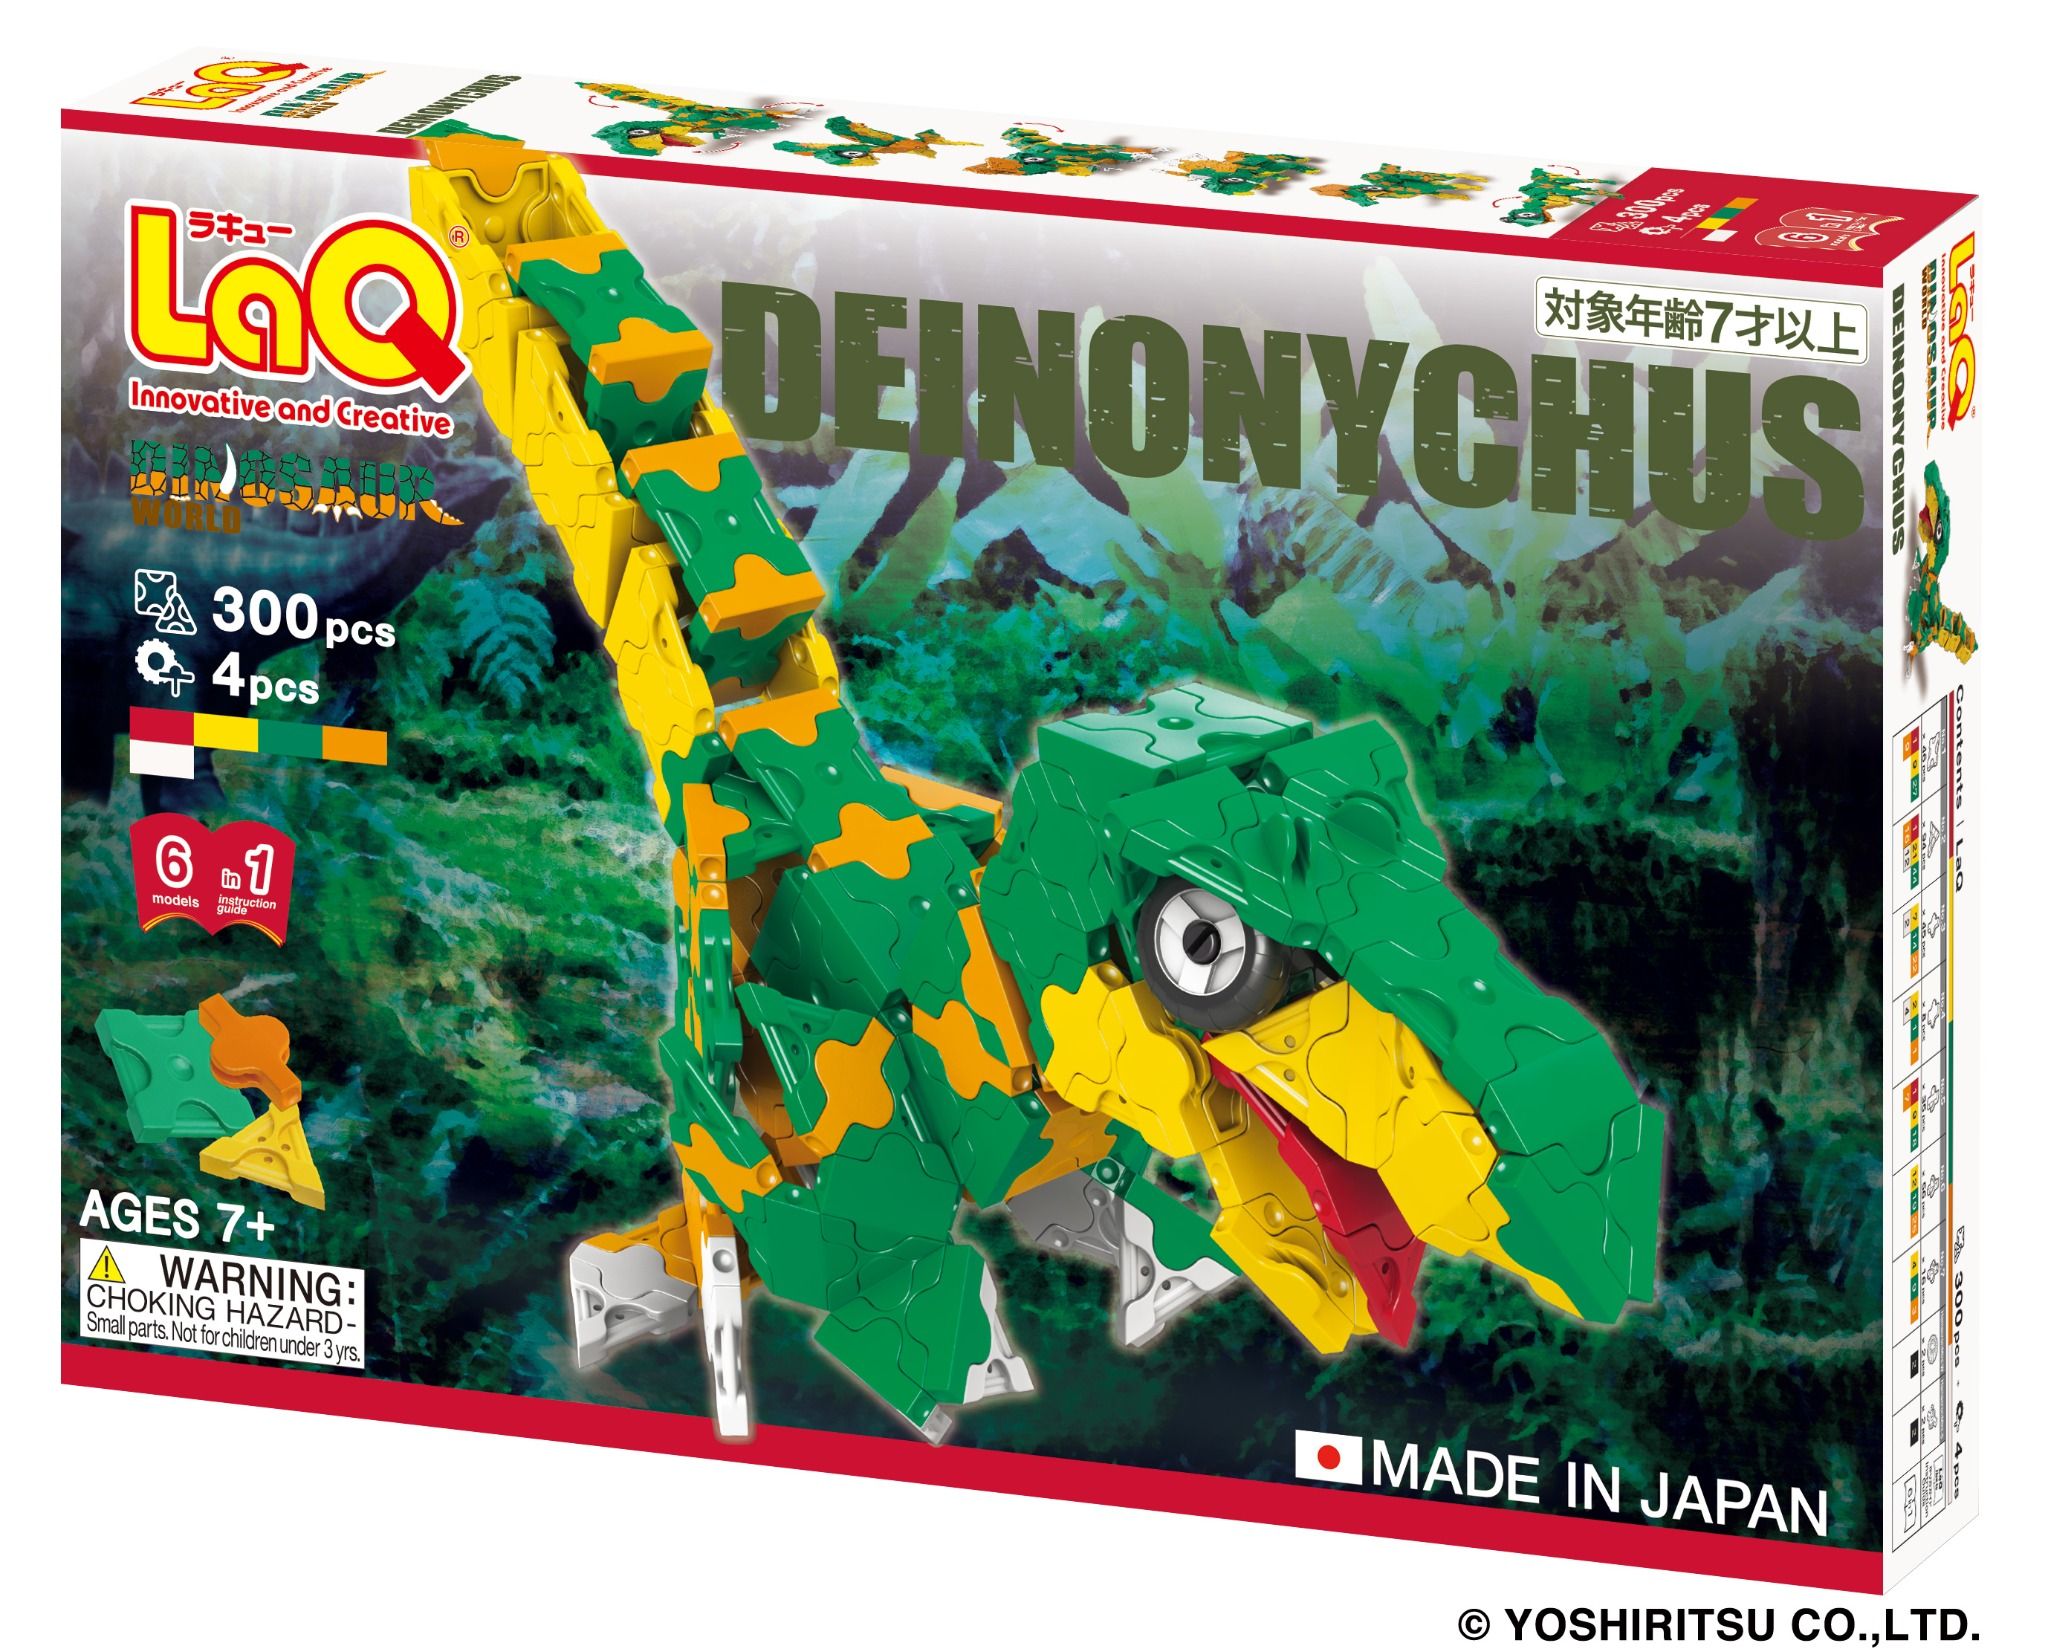  Bộ xếp hình sáng tạo LaQ Dinosaur World DEINONYCHUS - Chủ đề Thế giới Khủng long (Khủng long móng vuốt) 300 mảnh ghép 